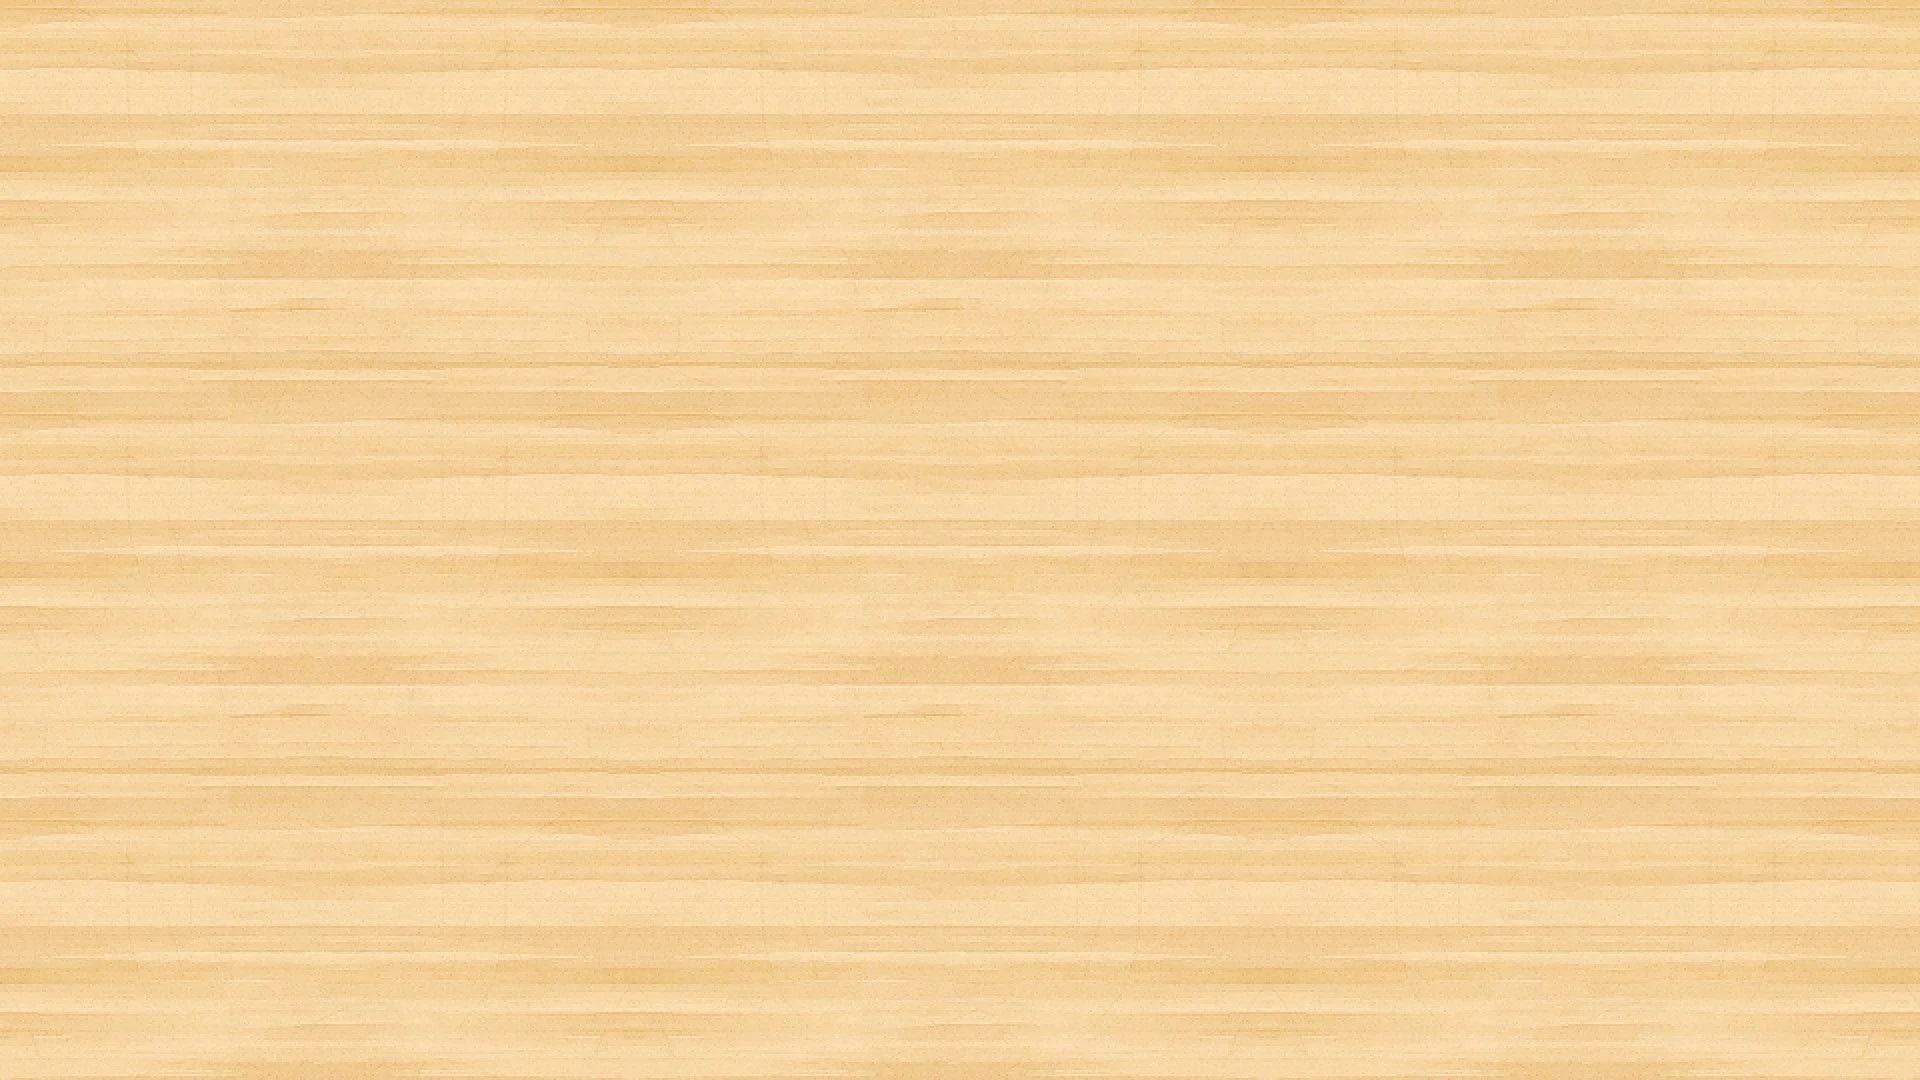 giấy dán tường gỗ màu vàng